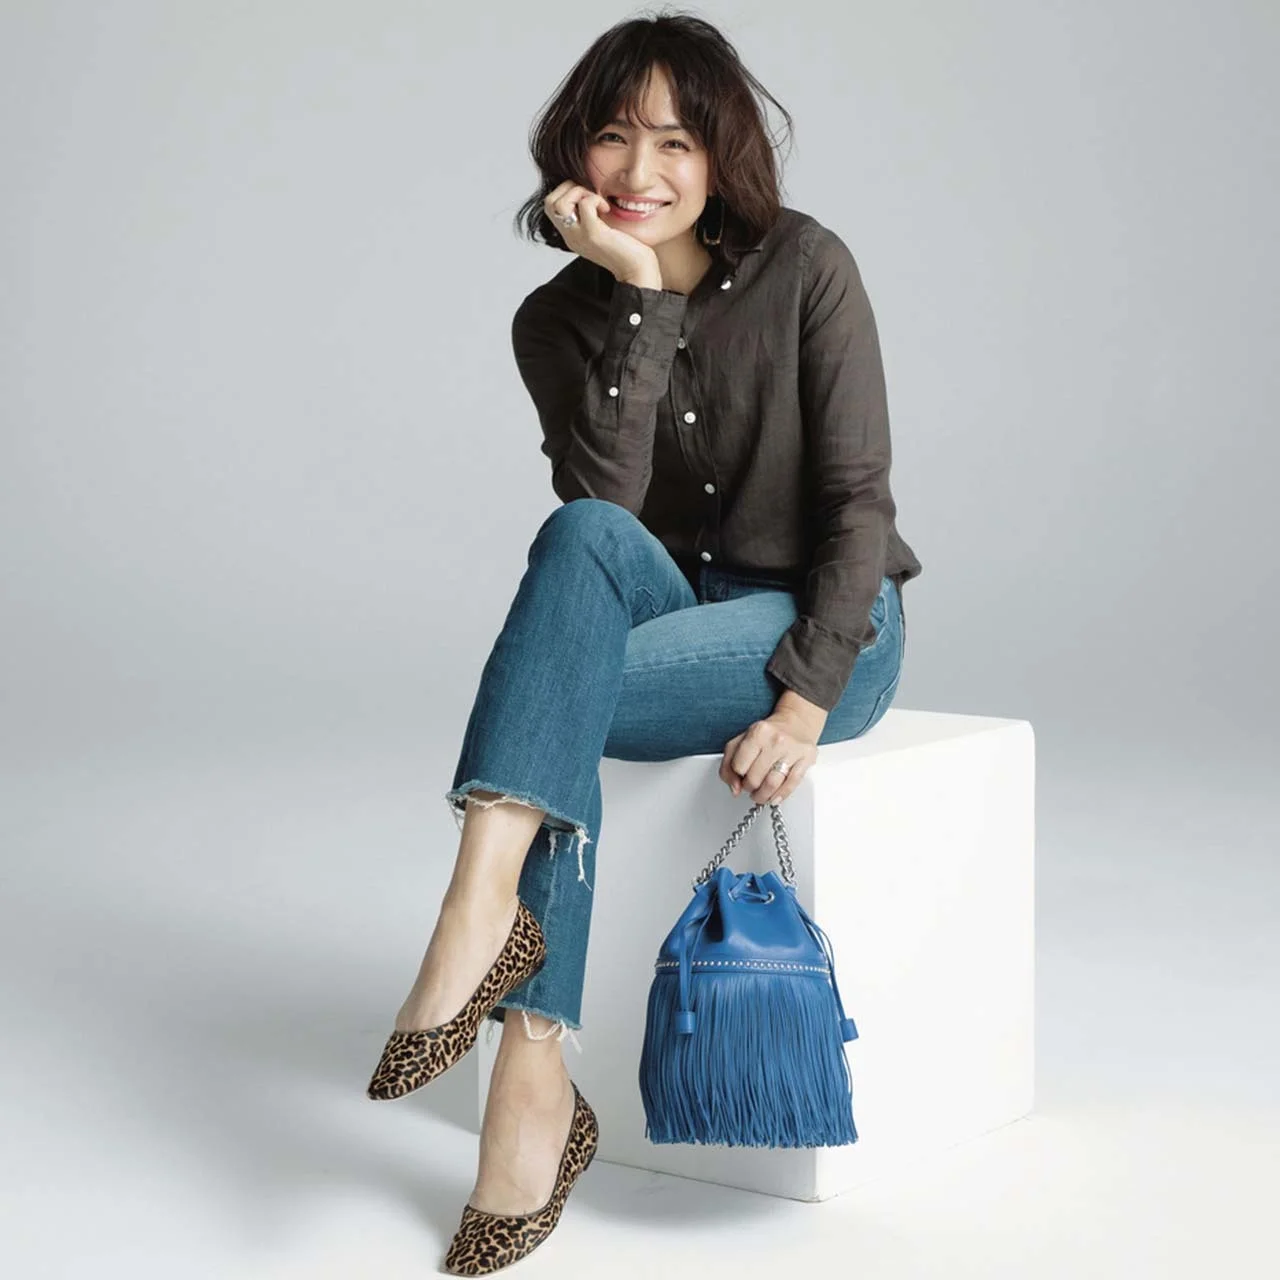 筒型バッグを持つモデルの佐田真由美さん